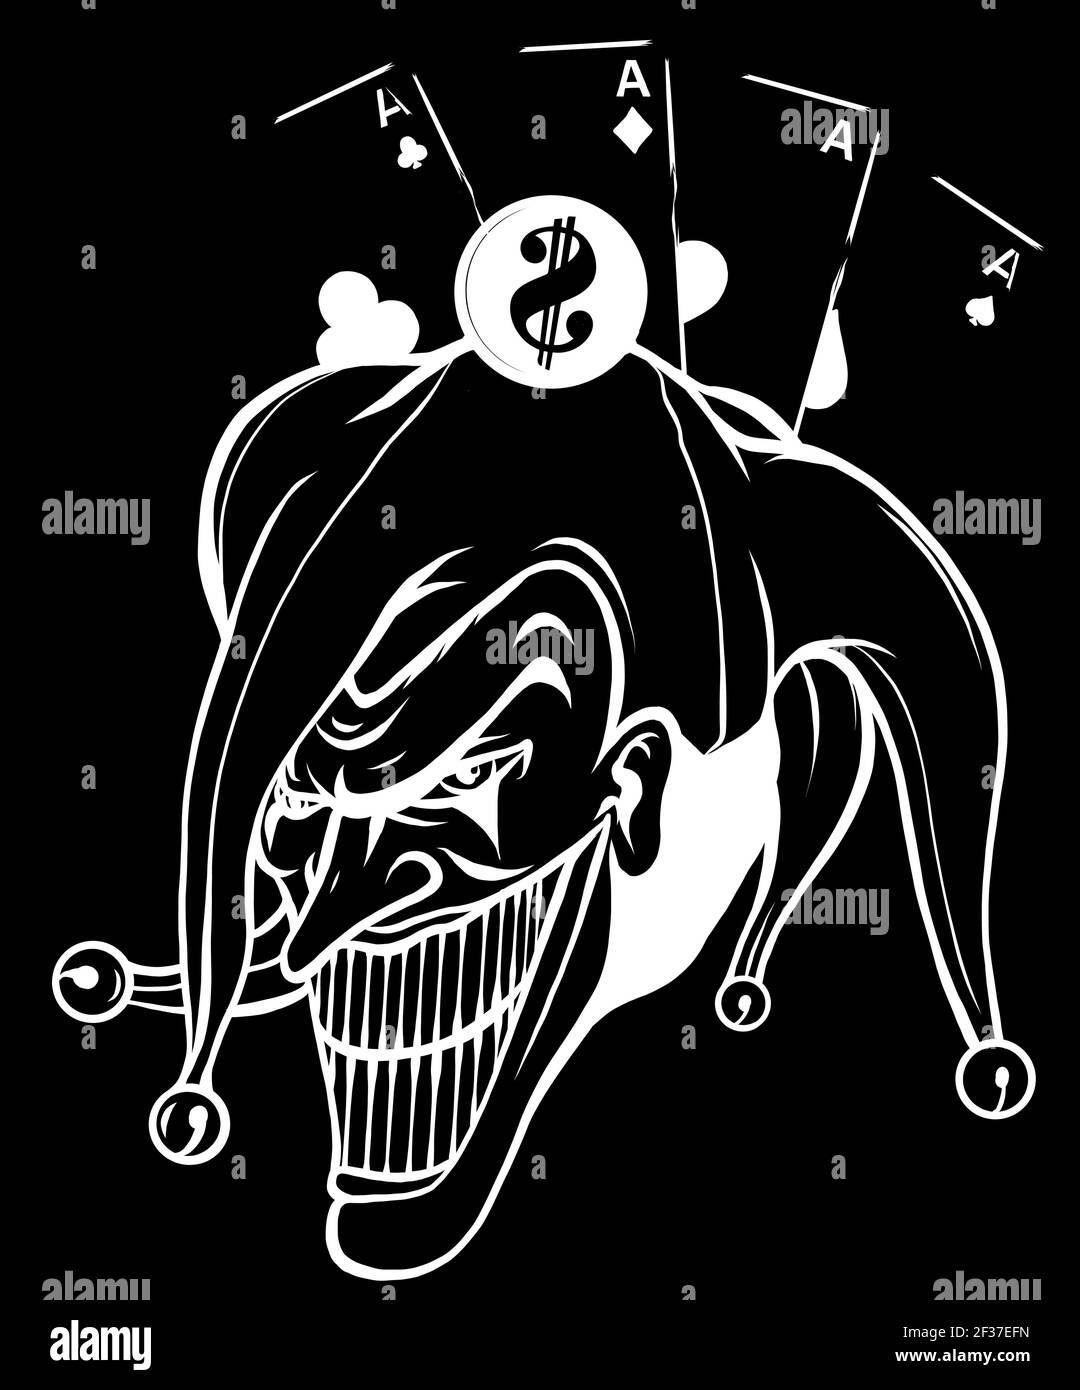 Illustration vectorielle fantaisie d'une silhouette de joker sur fond noir Illustration de Vecteur